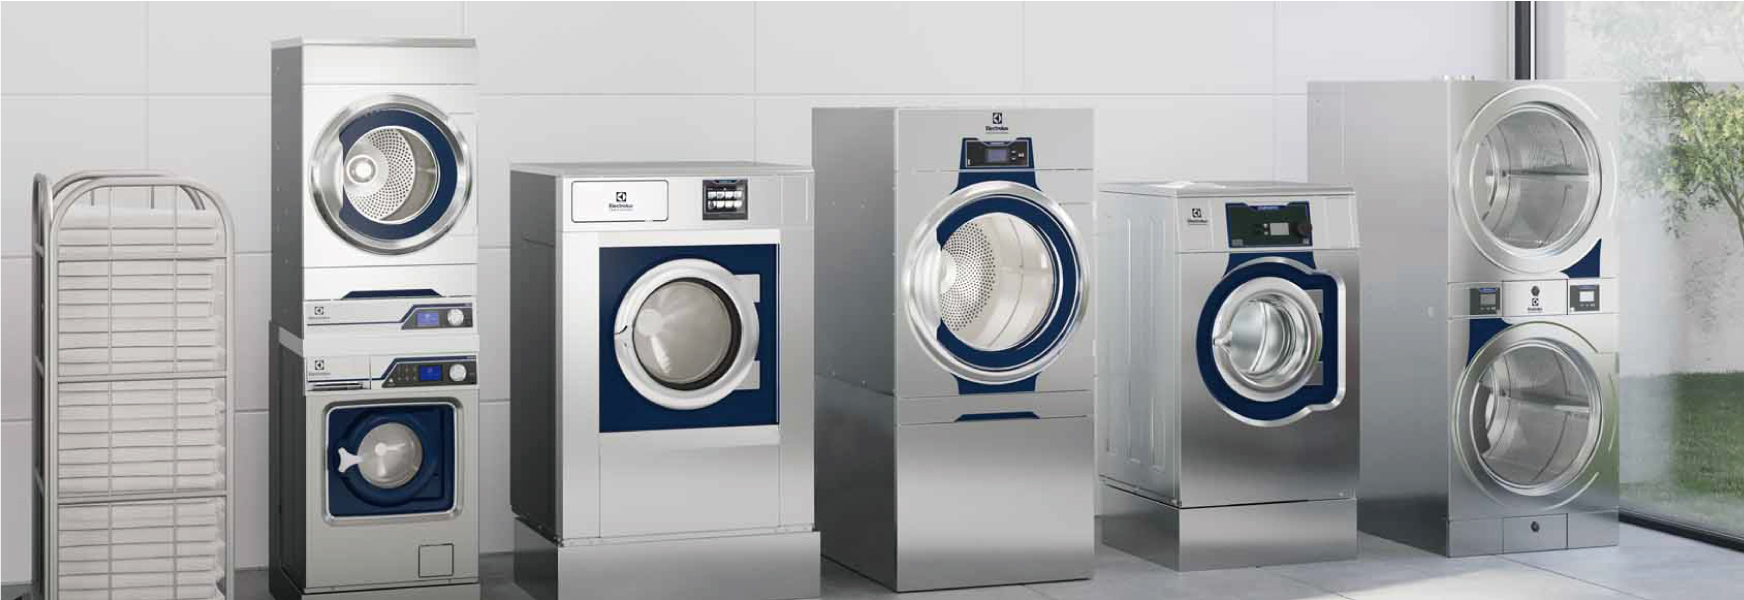 유럽 최고의 일렉트로룩스 상업용 세탁 장비